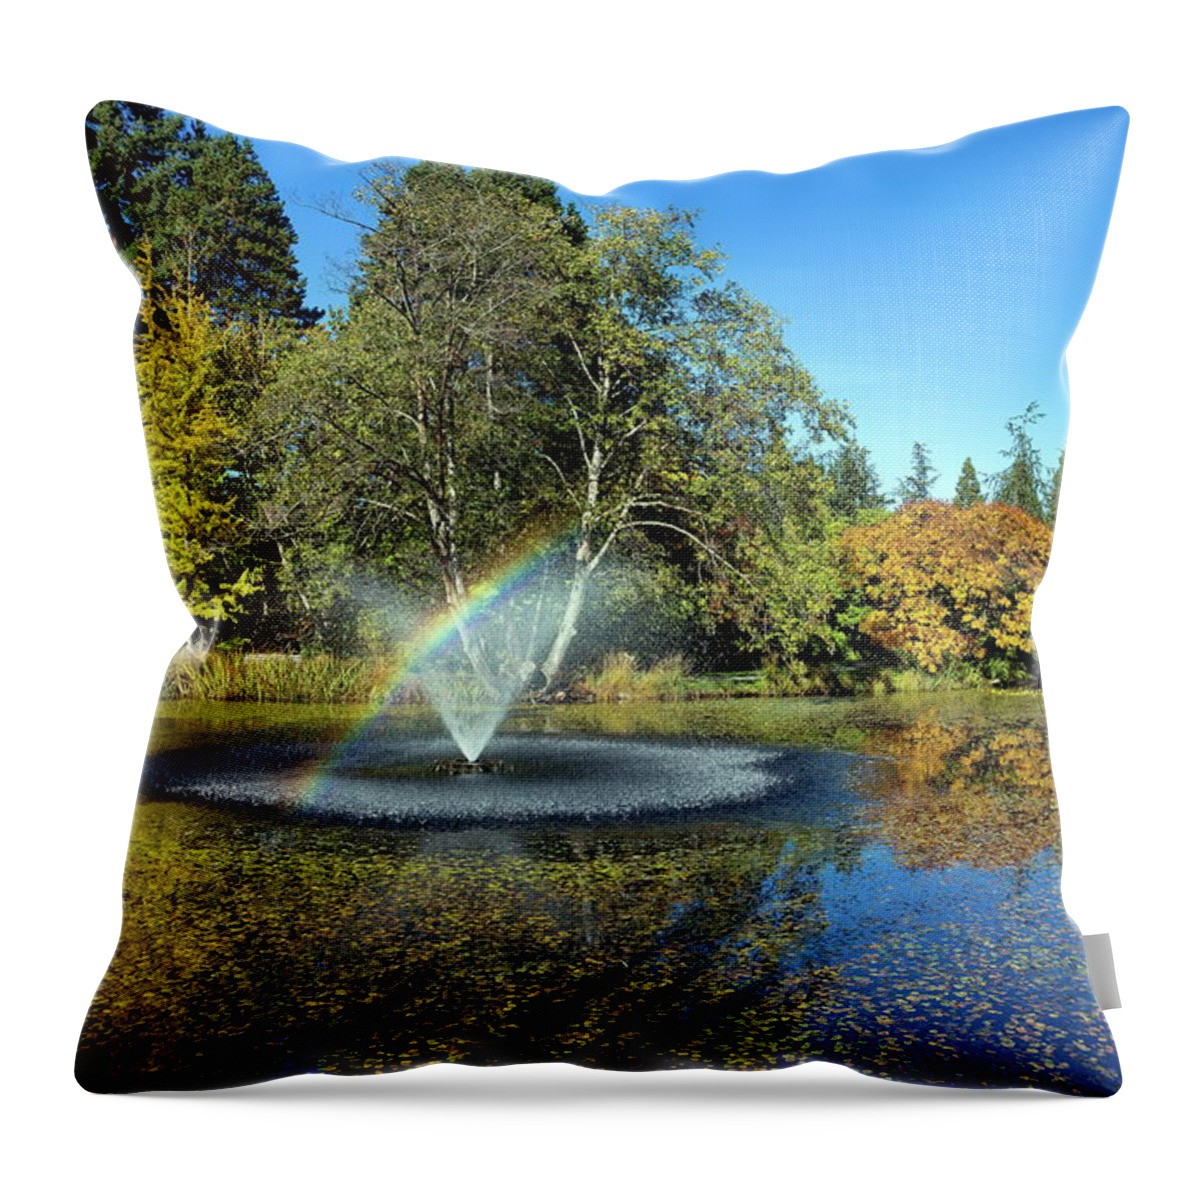 Alex Lyubar Throw Pillow featuring the photograph Rainbow in the fountain by Alex Lyubar